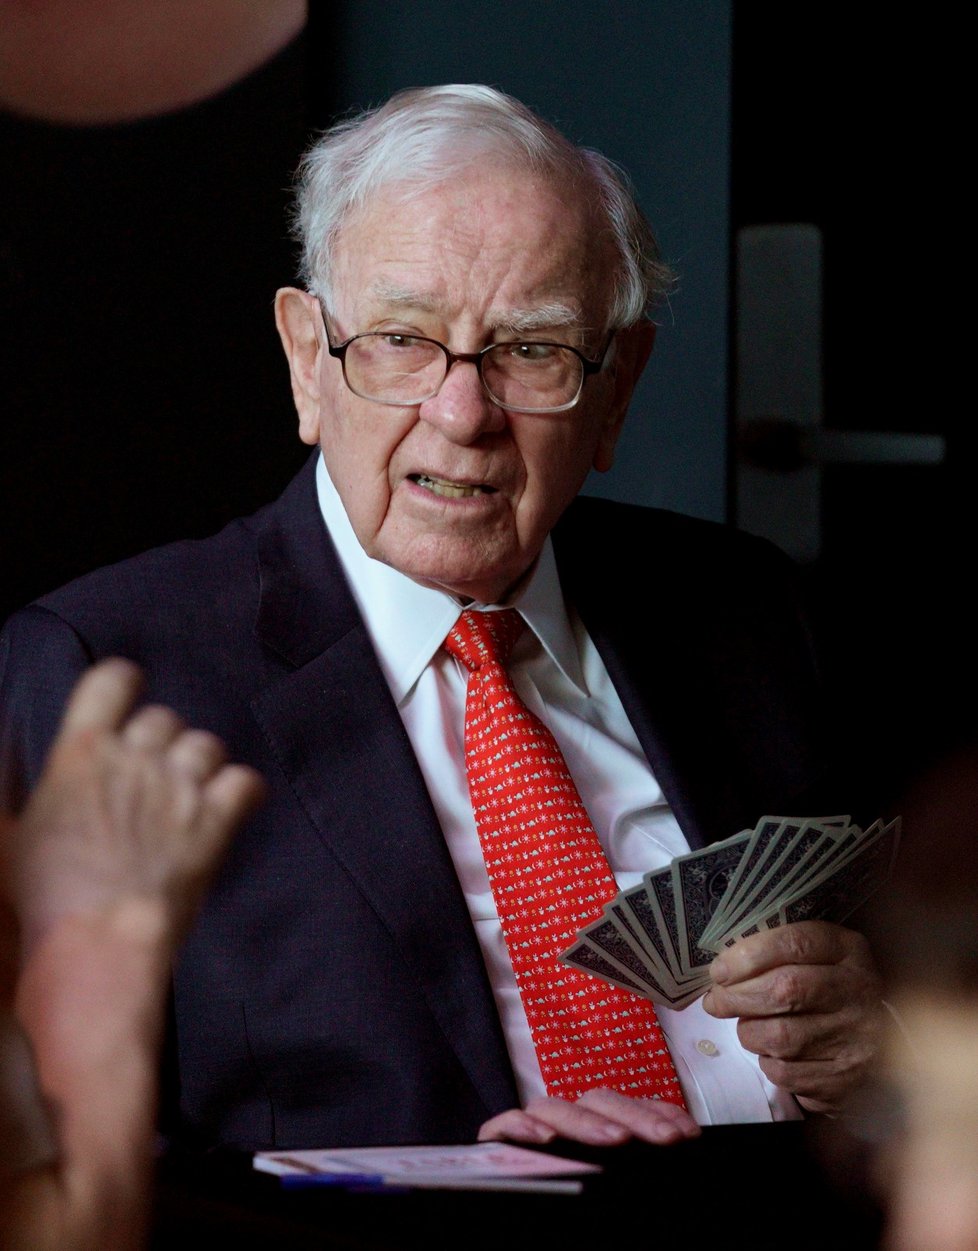 Warren Buffett, CEO společnosti Berkshire Hathaway